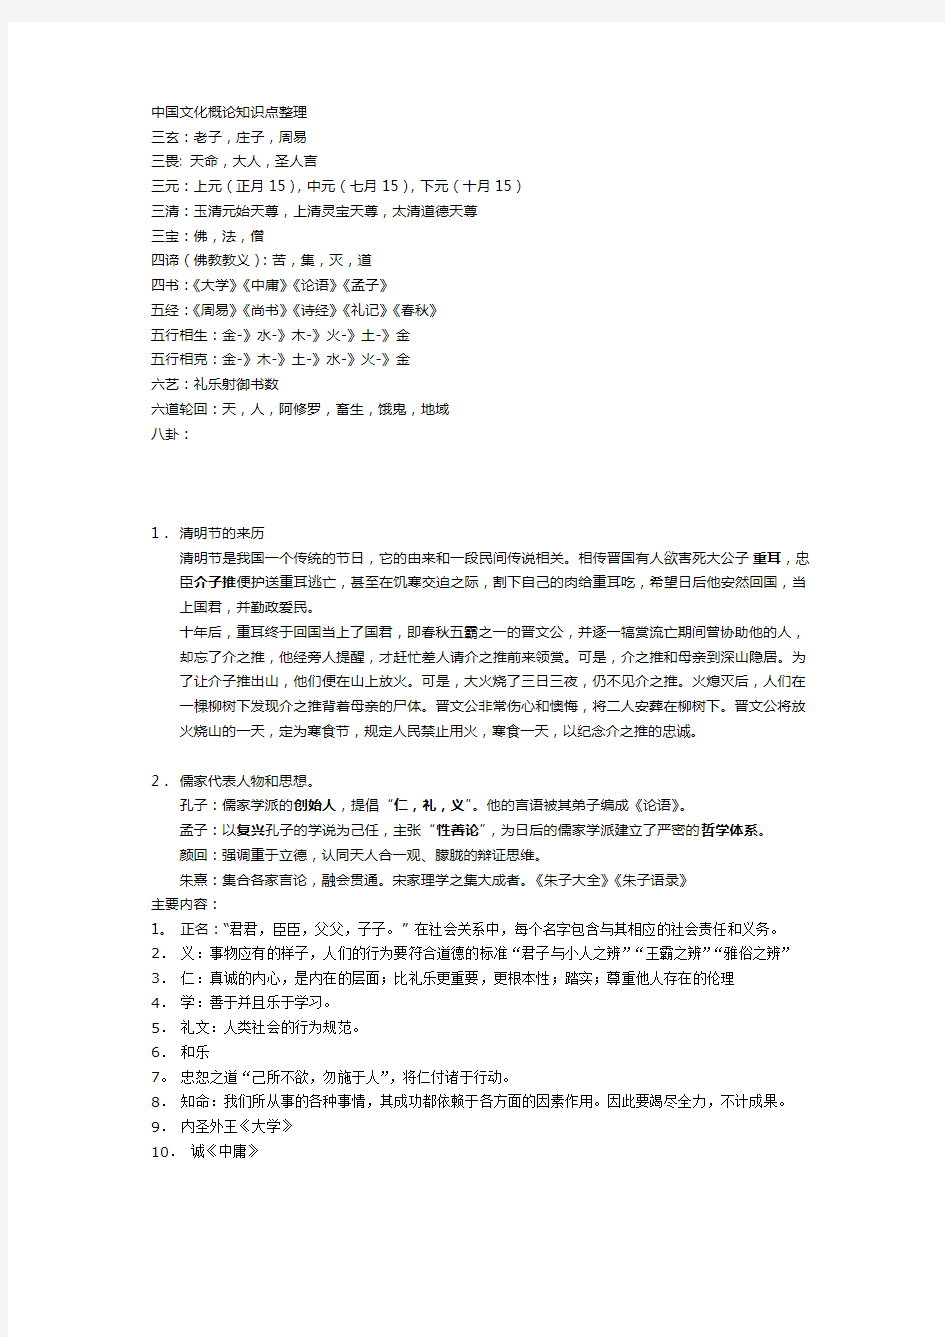 选修中国文化概论考试大纲和笔记整理